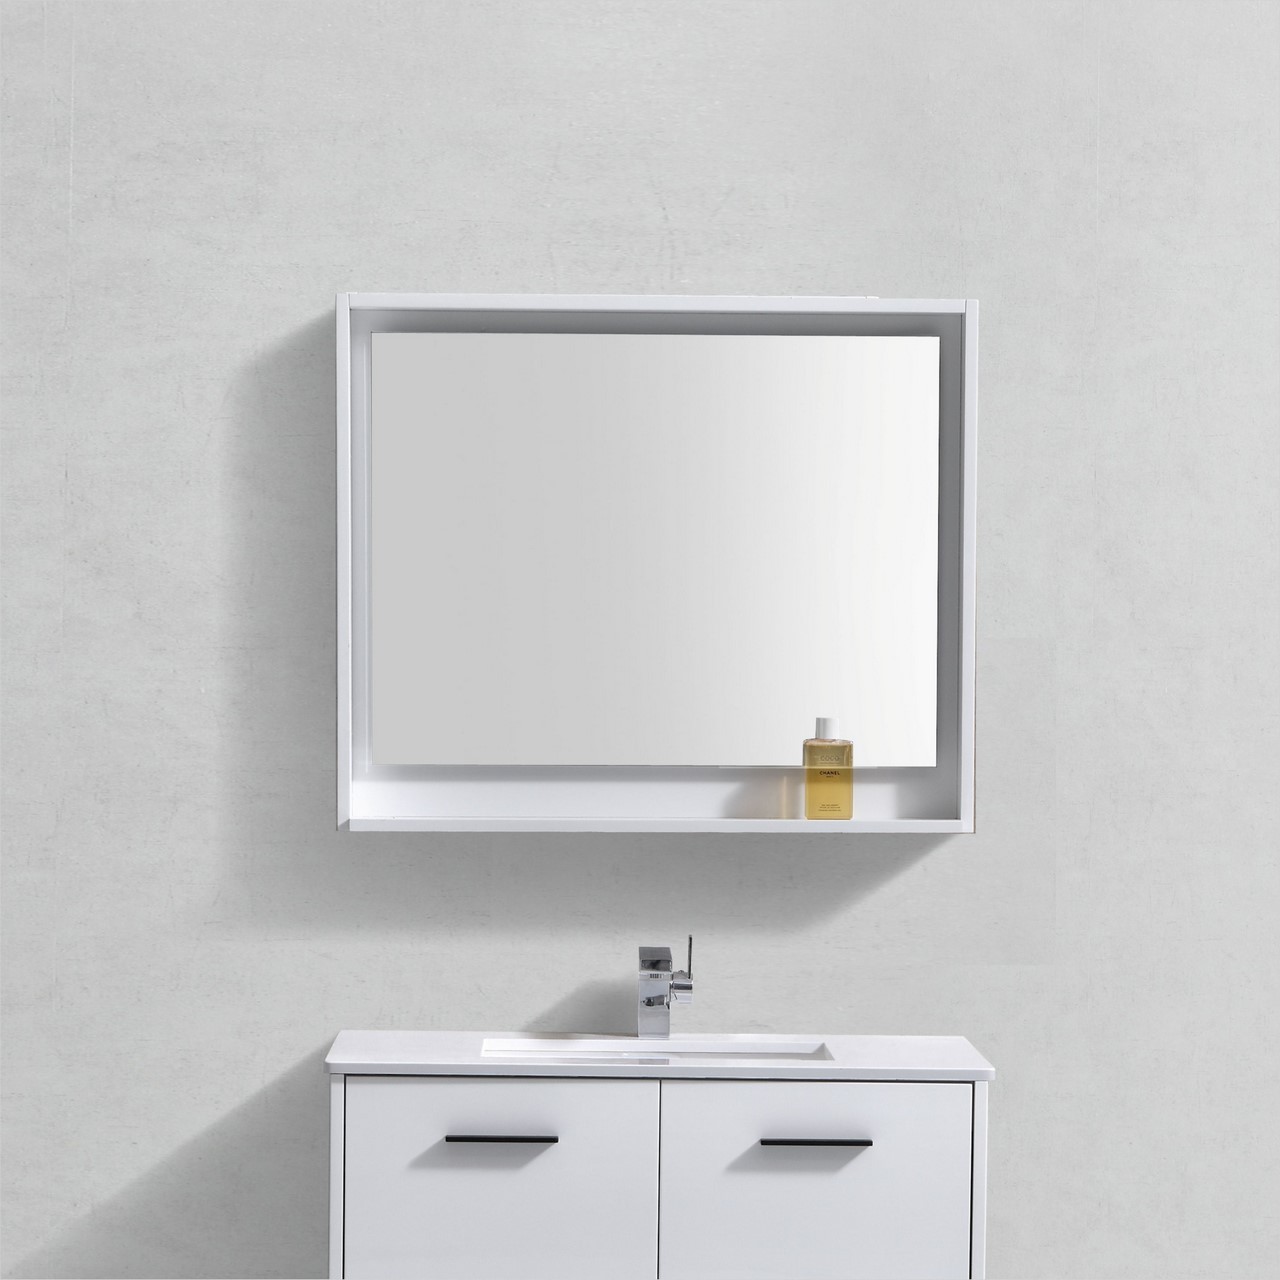 Bosco 36" Framed Mirror With Shelve - Gloss White Finish